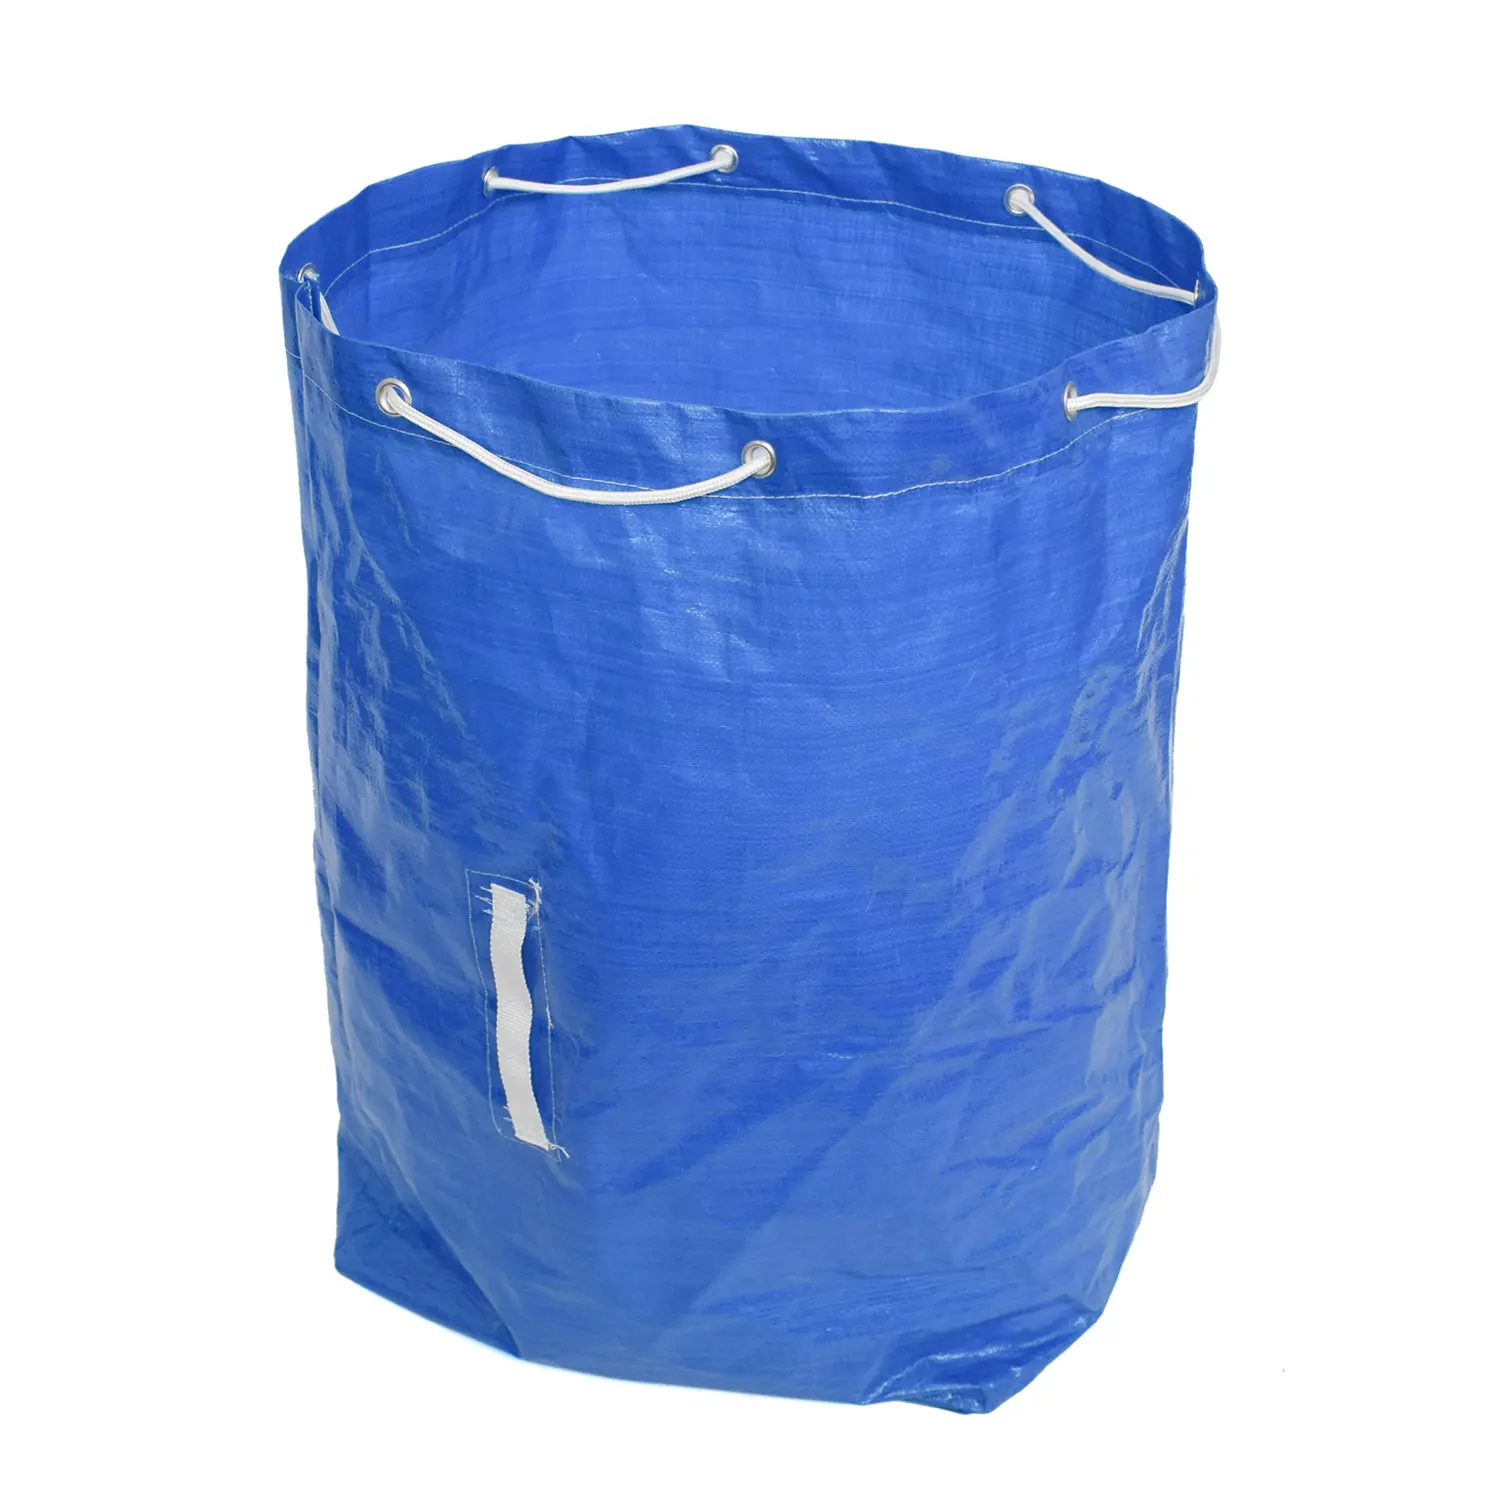 De servicio pesado jardín bolsa de residuos de jardín sacos pesados reutilizable reutilizables patio bolsa de residuos de jardín bolsas de basura